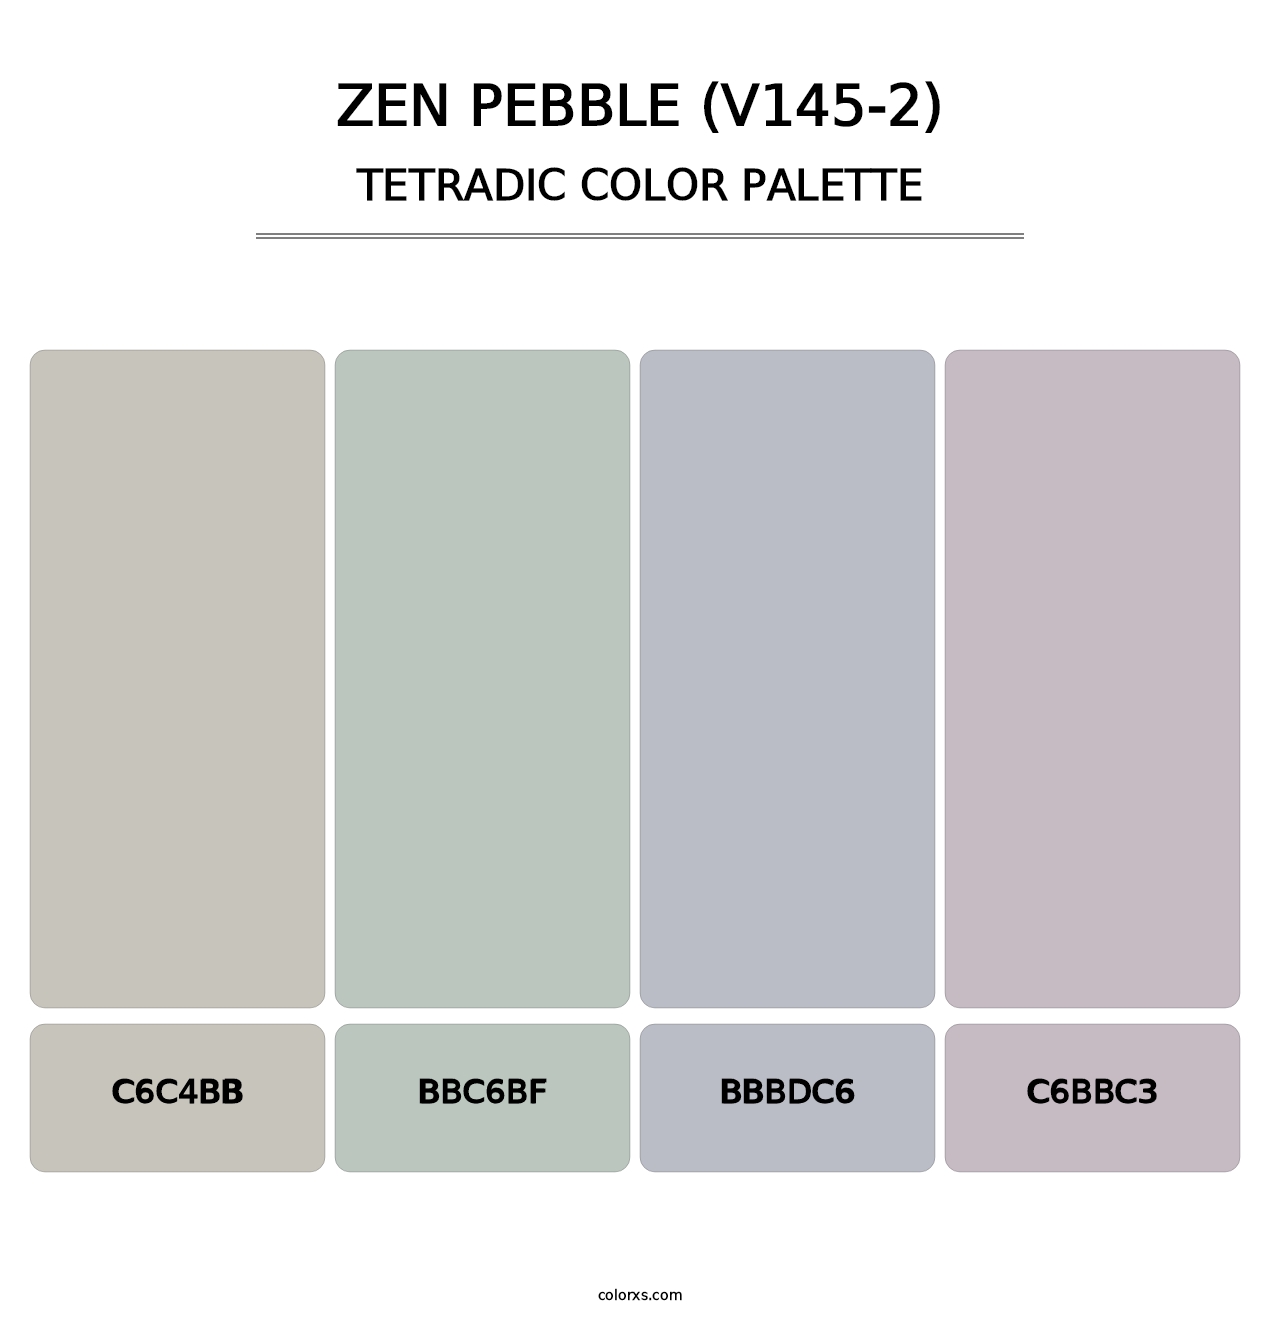 Zen Pebble (V145-2) - Tetradic Color Palette